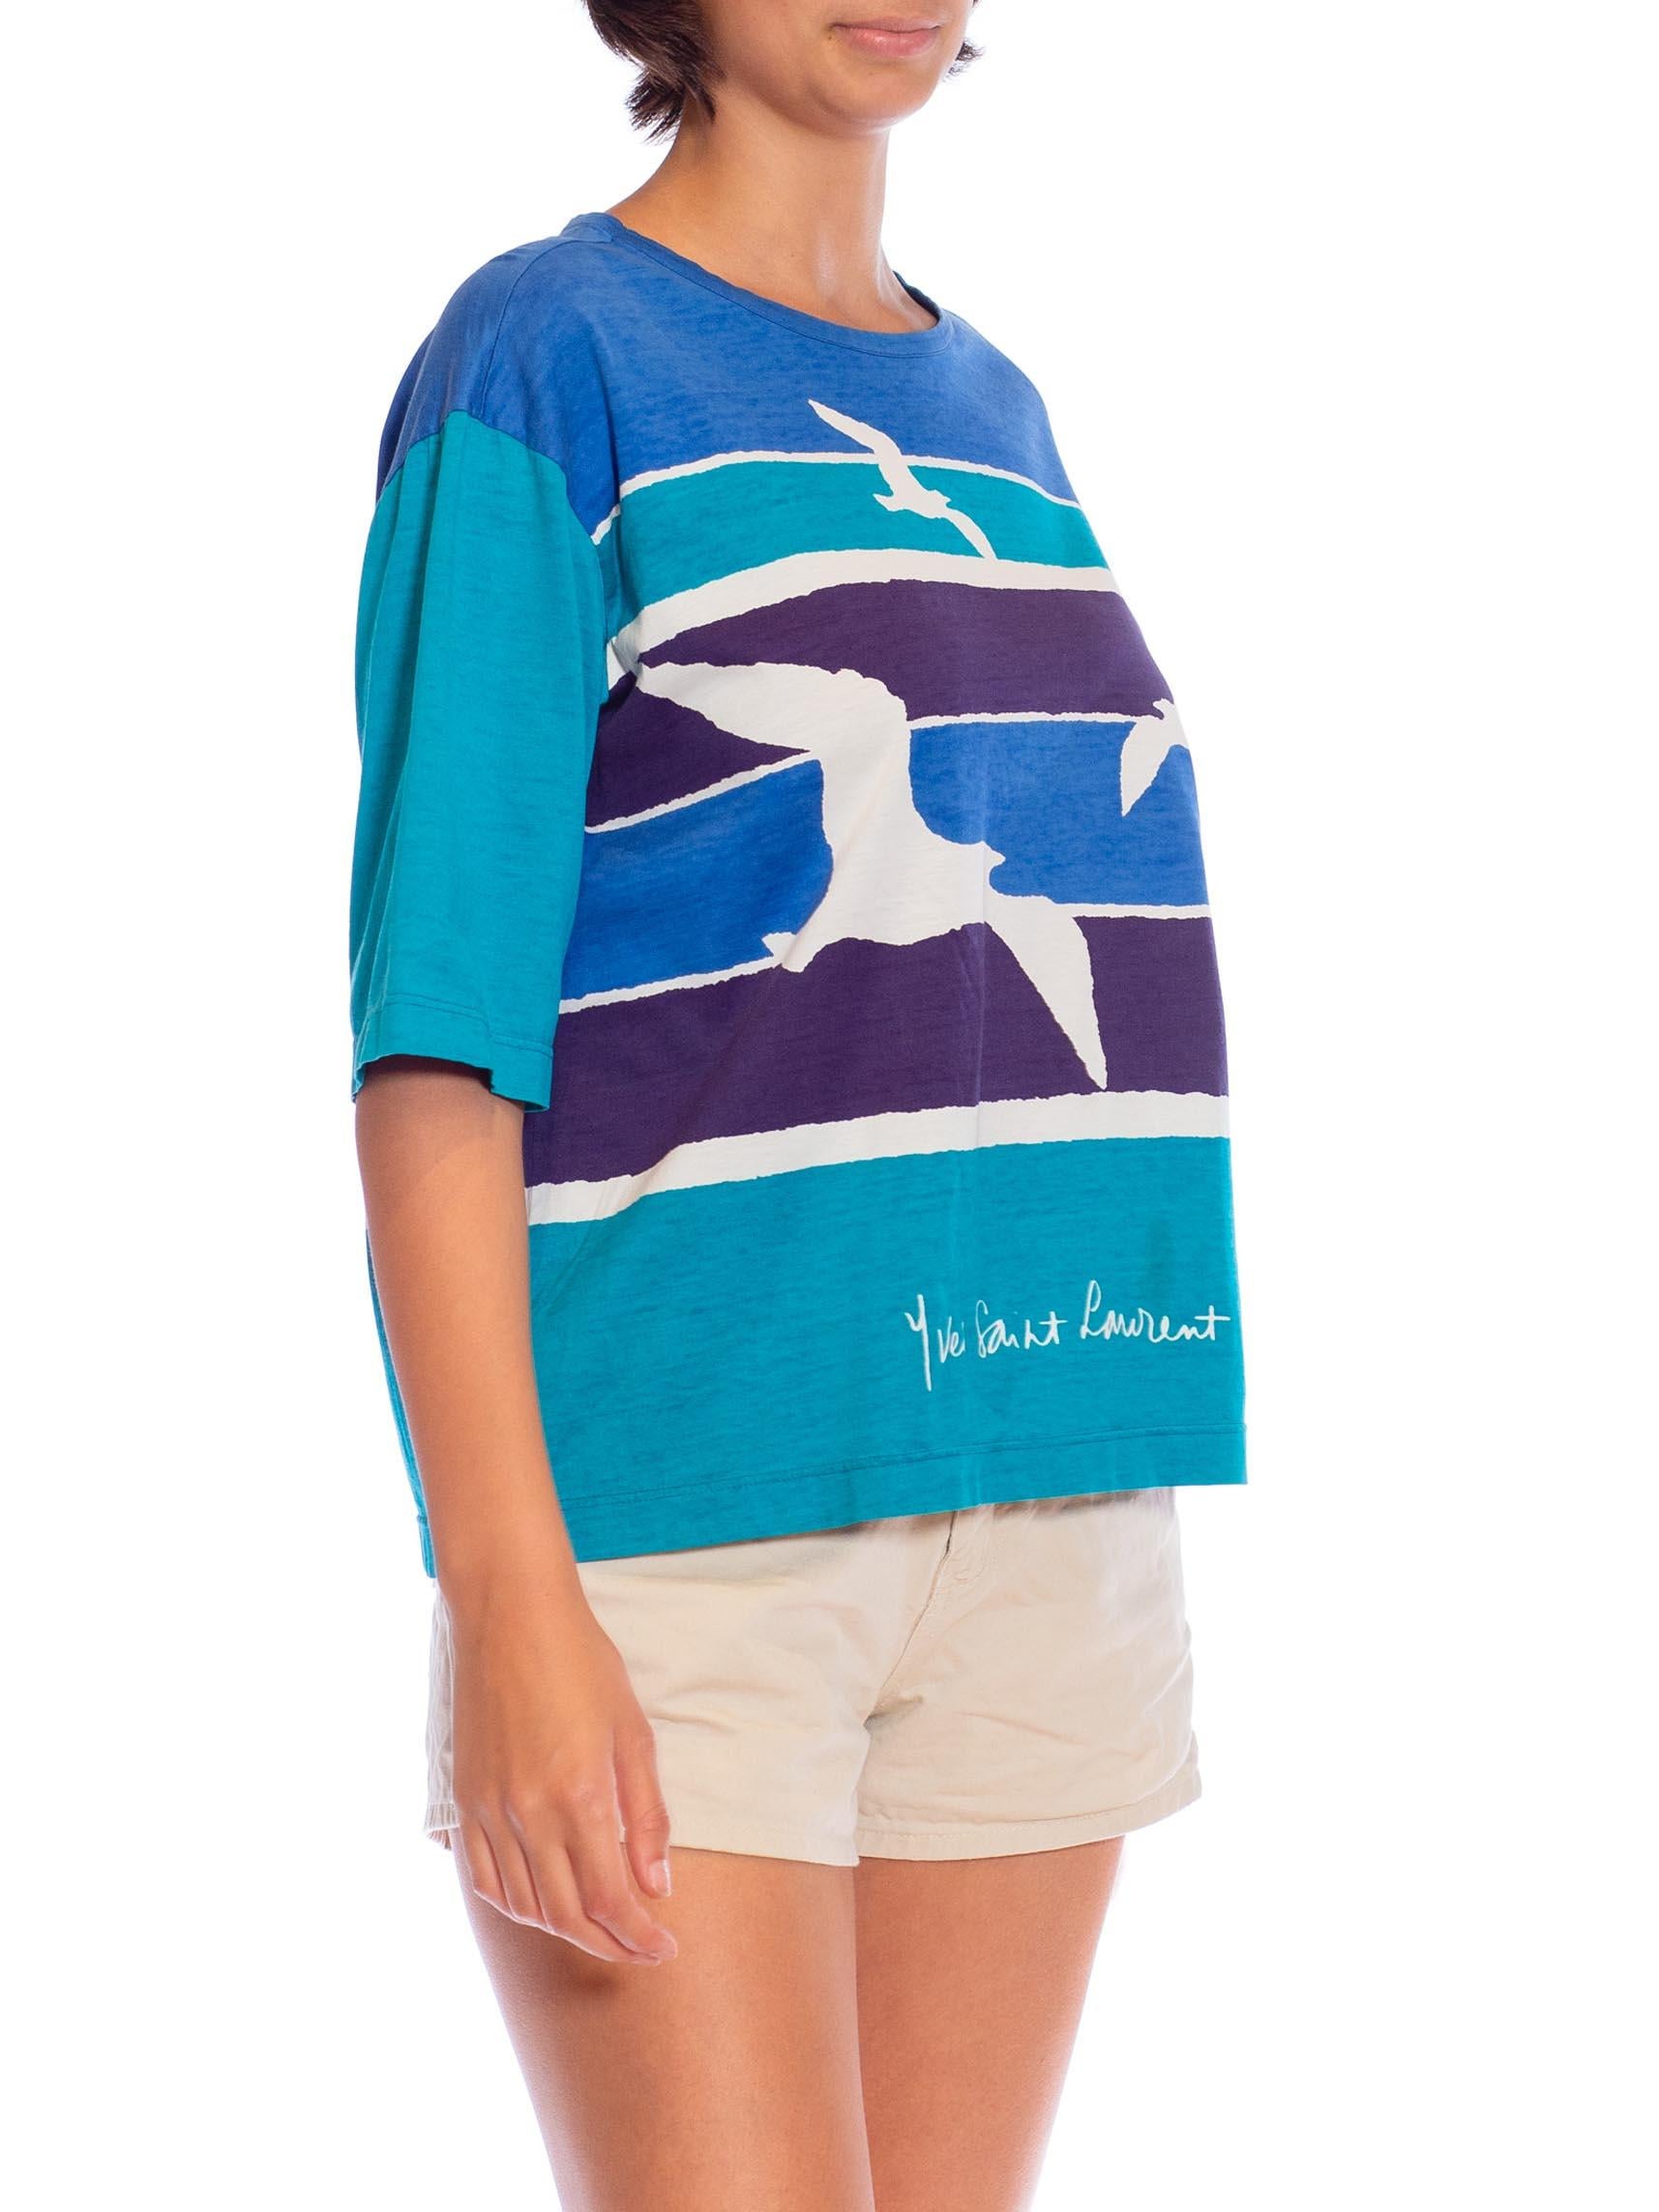 1970S YVES SAINT LAURENT Blue & Teal Cotton Jersey Rare Seashore Print T-Shirt For Sale 2